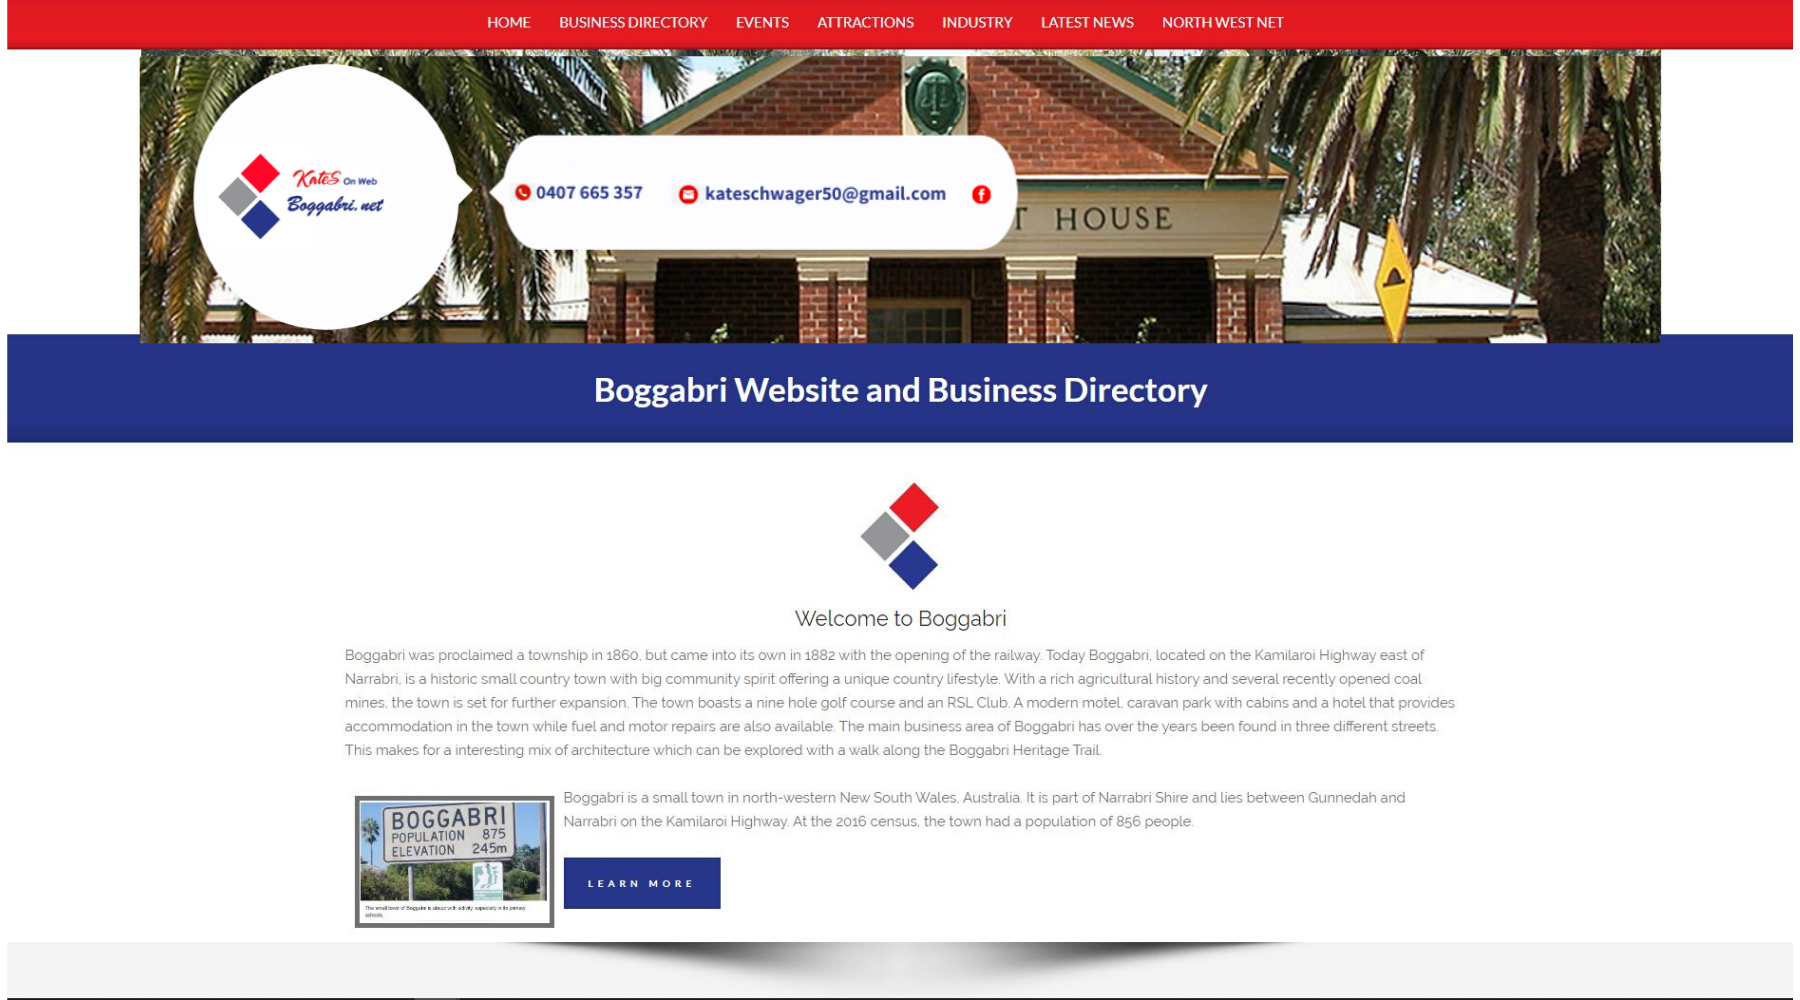 Boggabri Website Coming Soon...